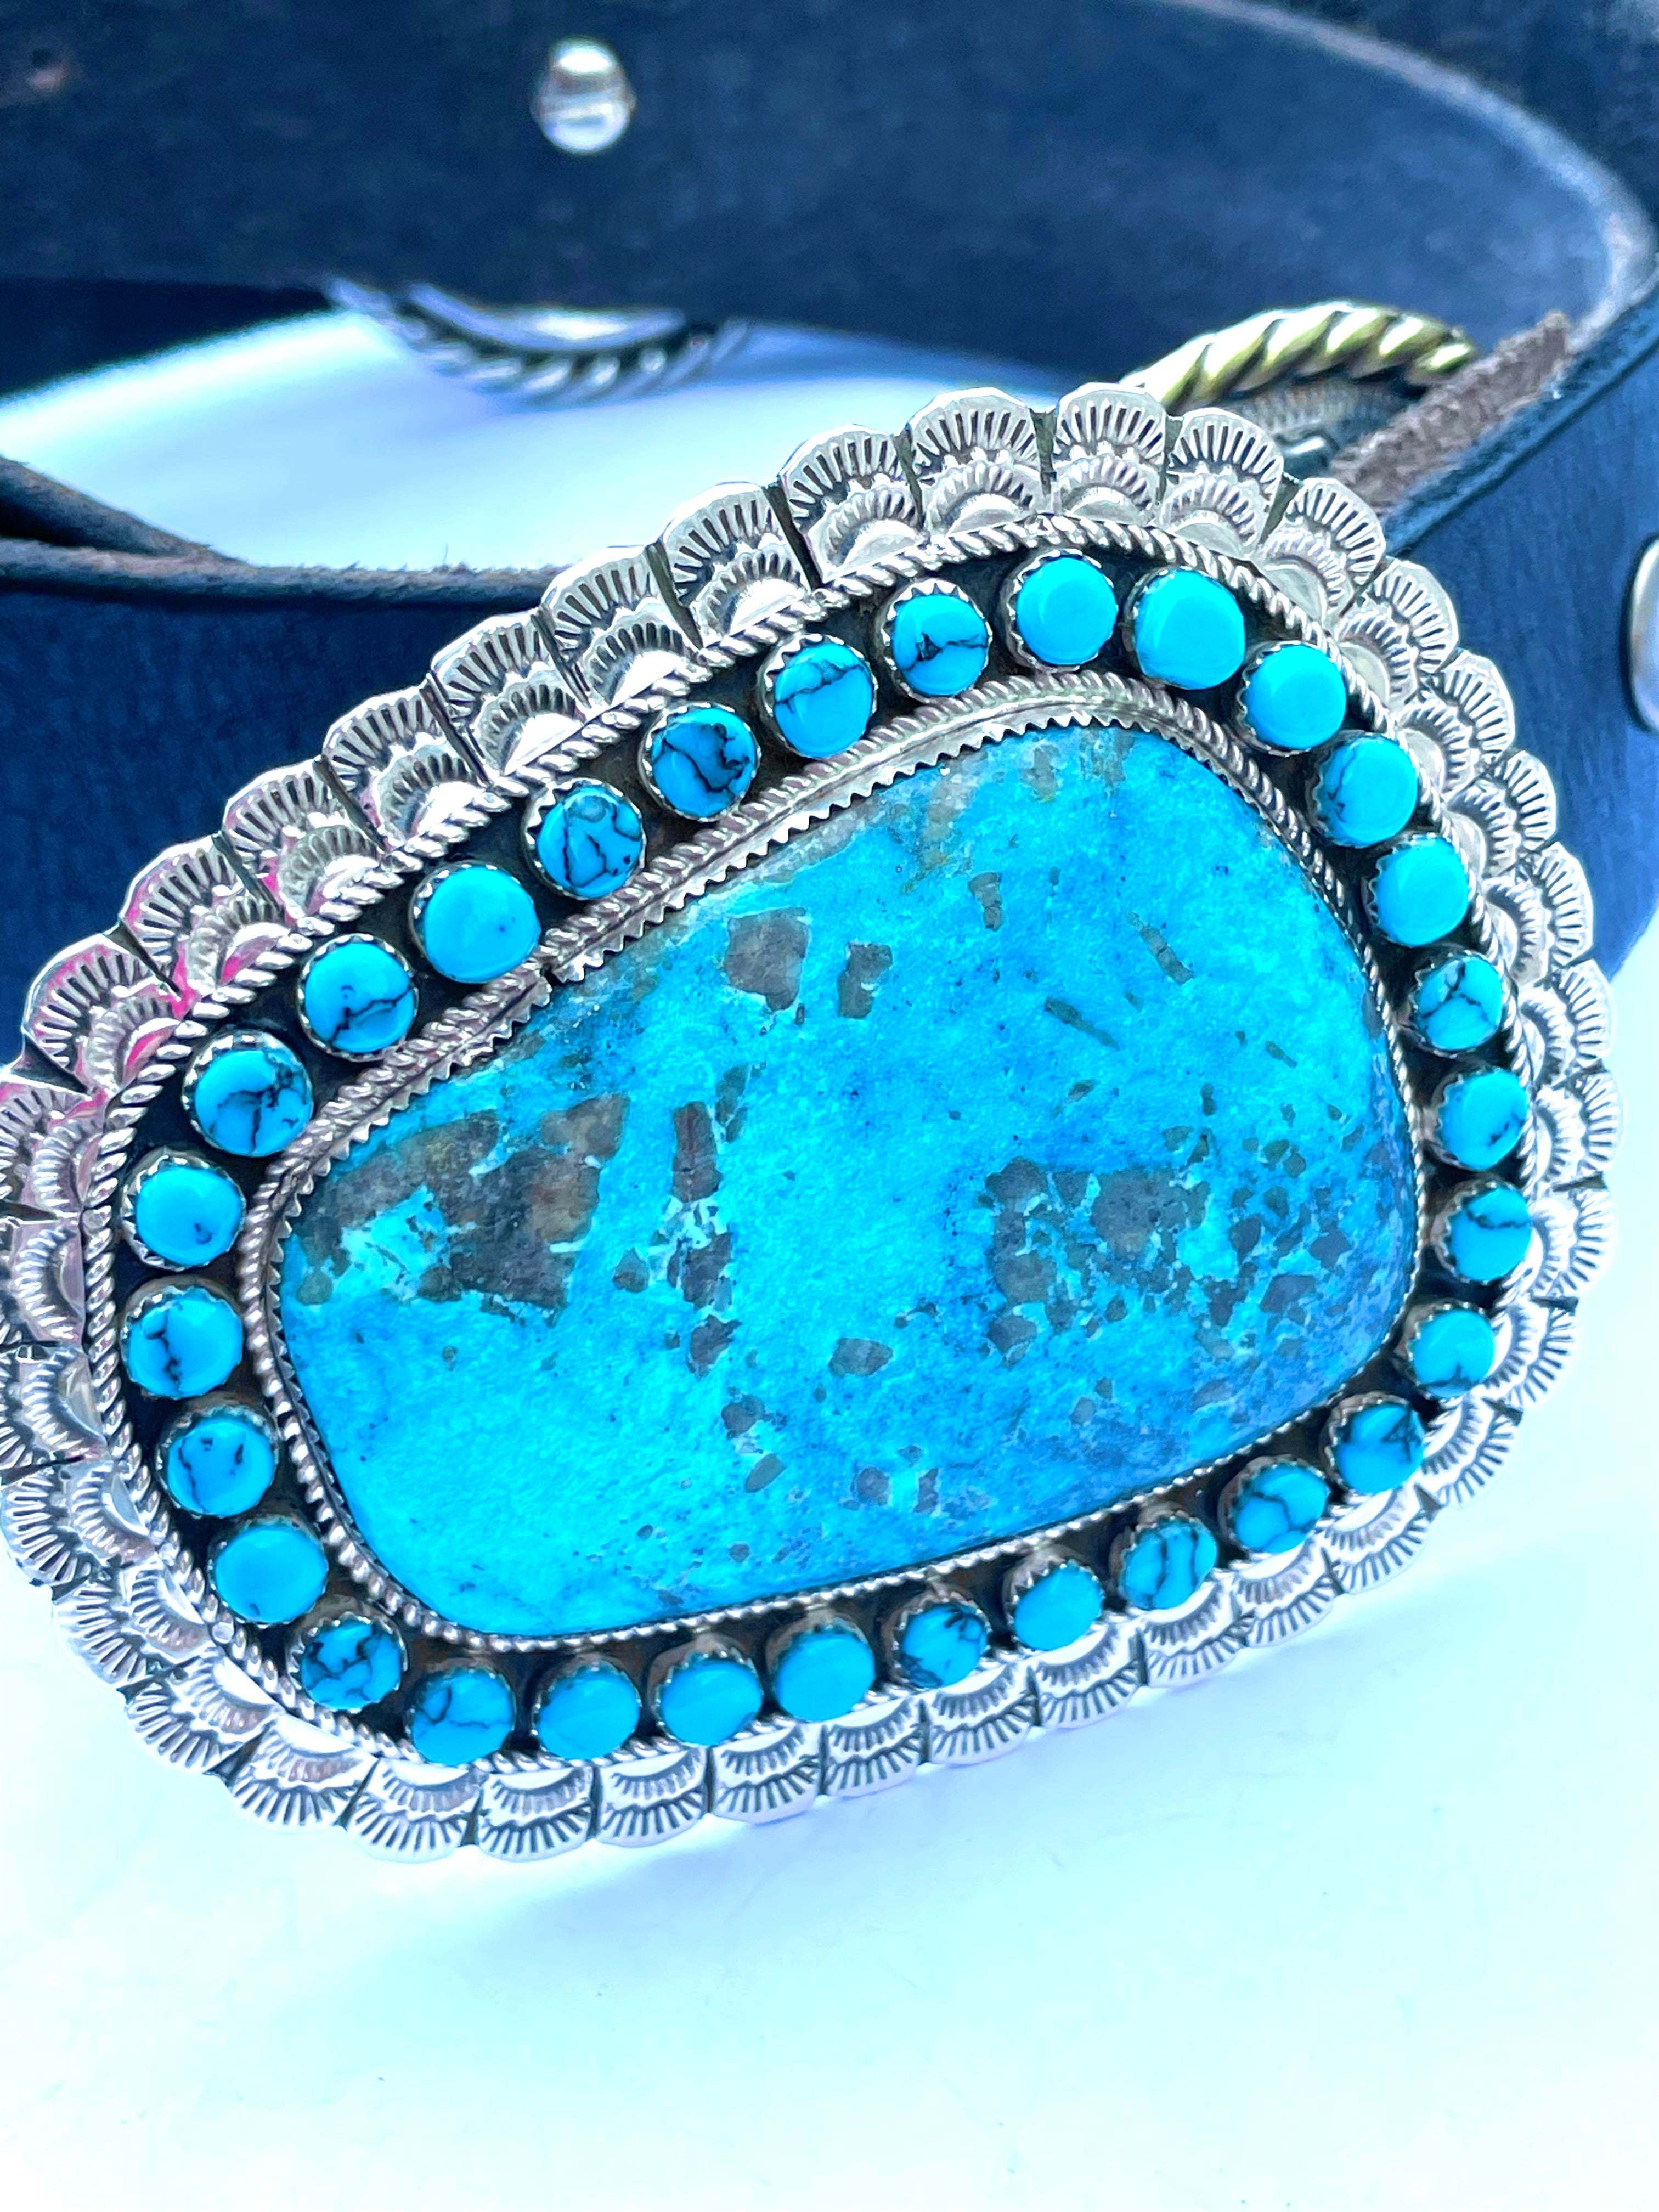 Amazing turquoise belt buckle Navajo